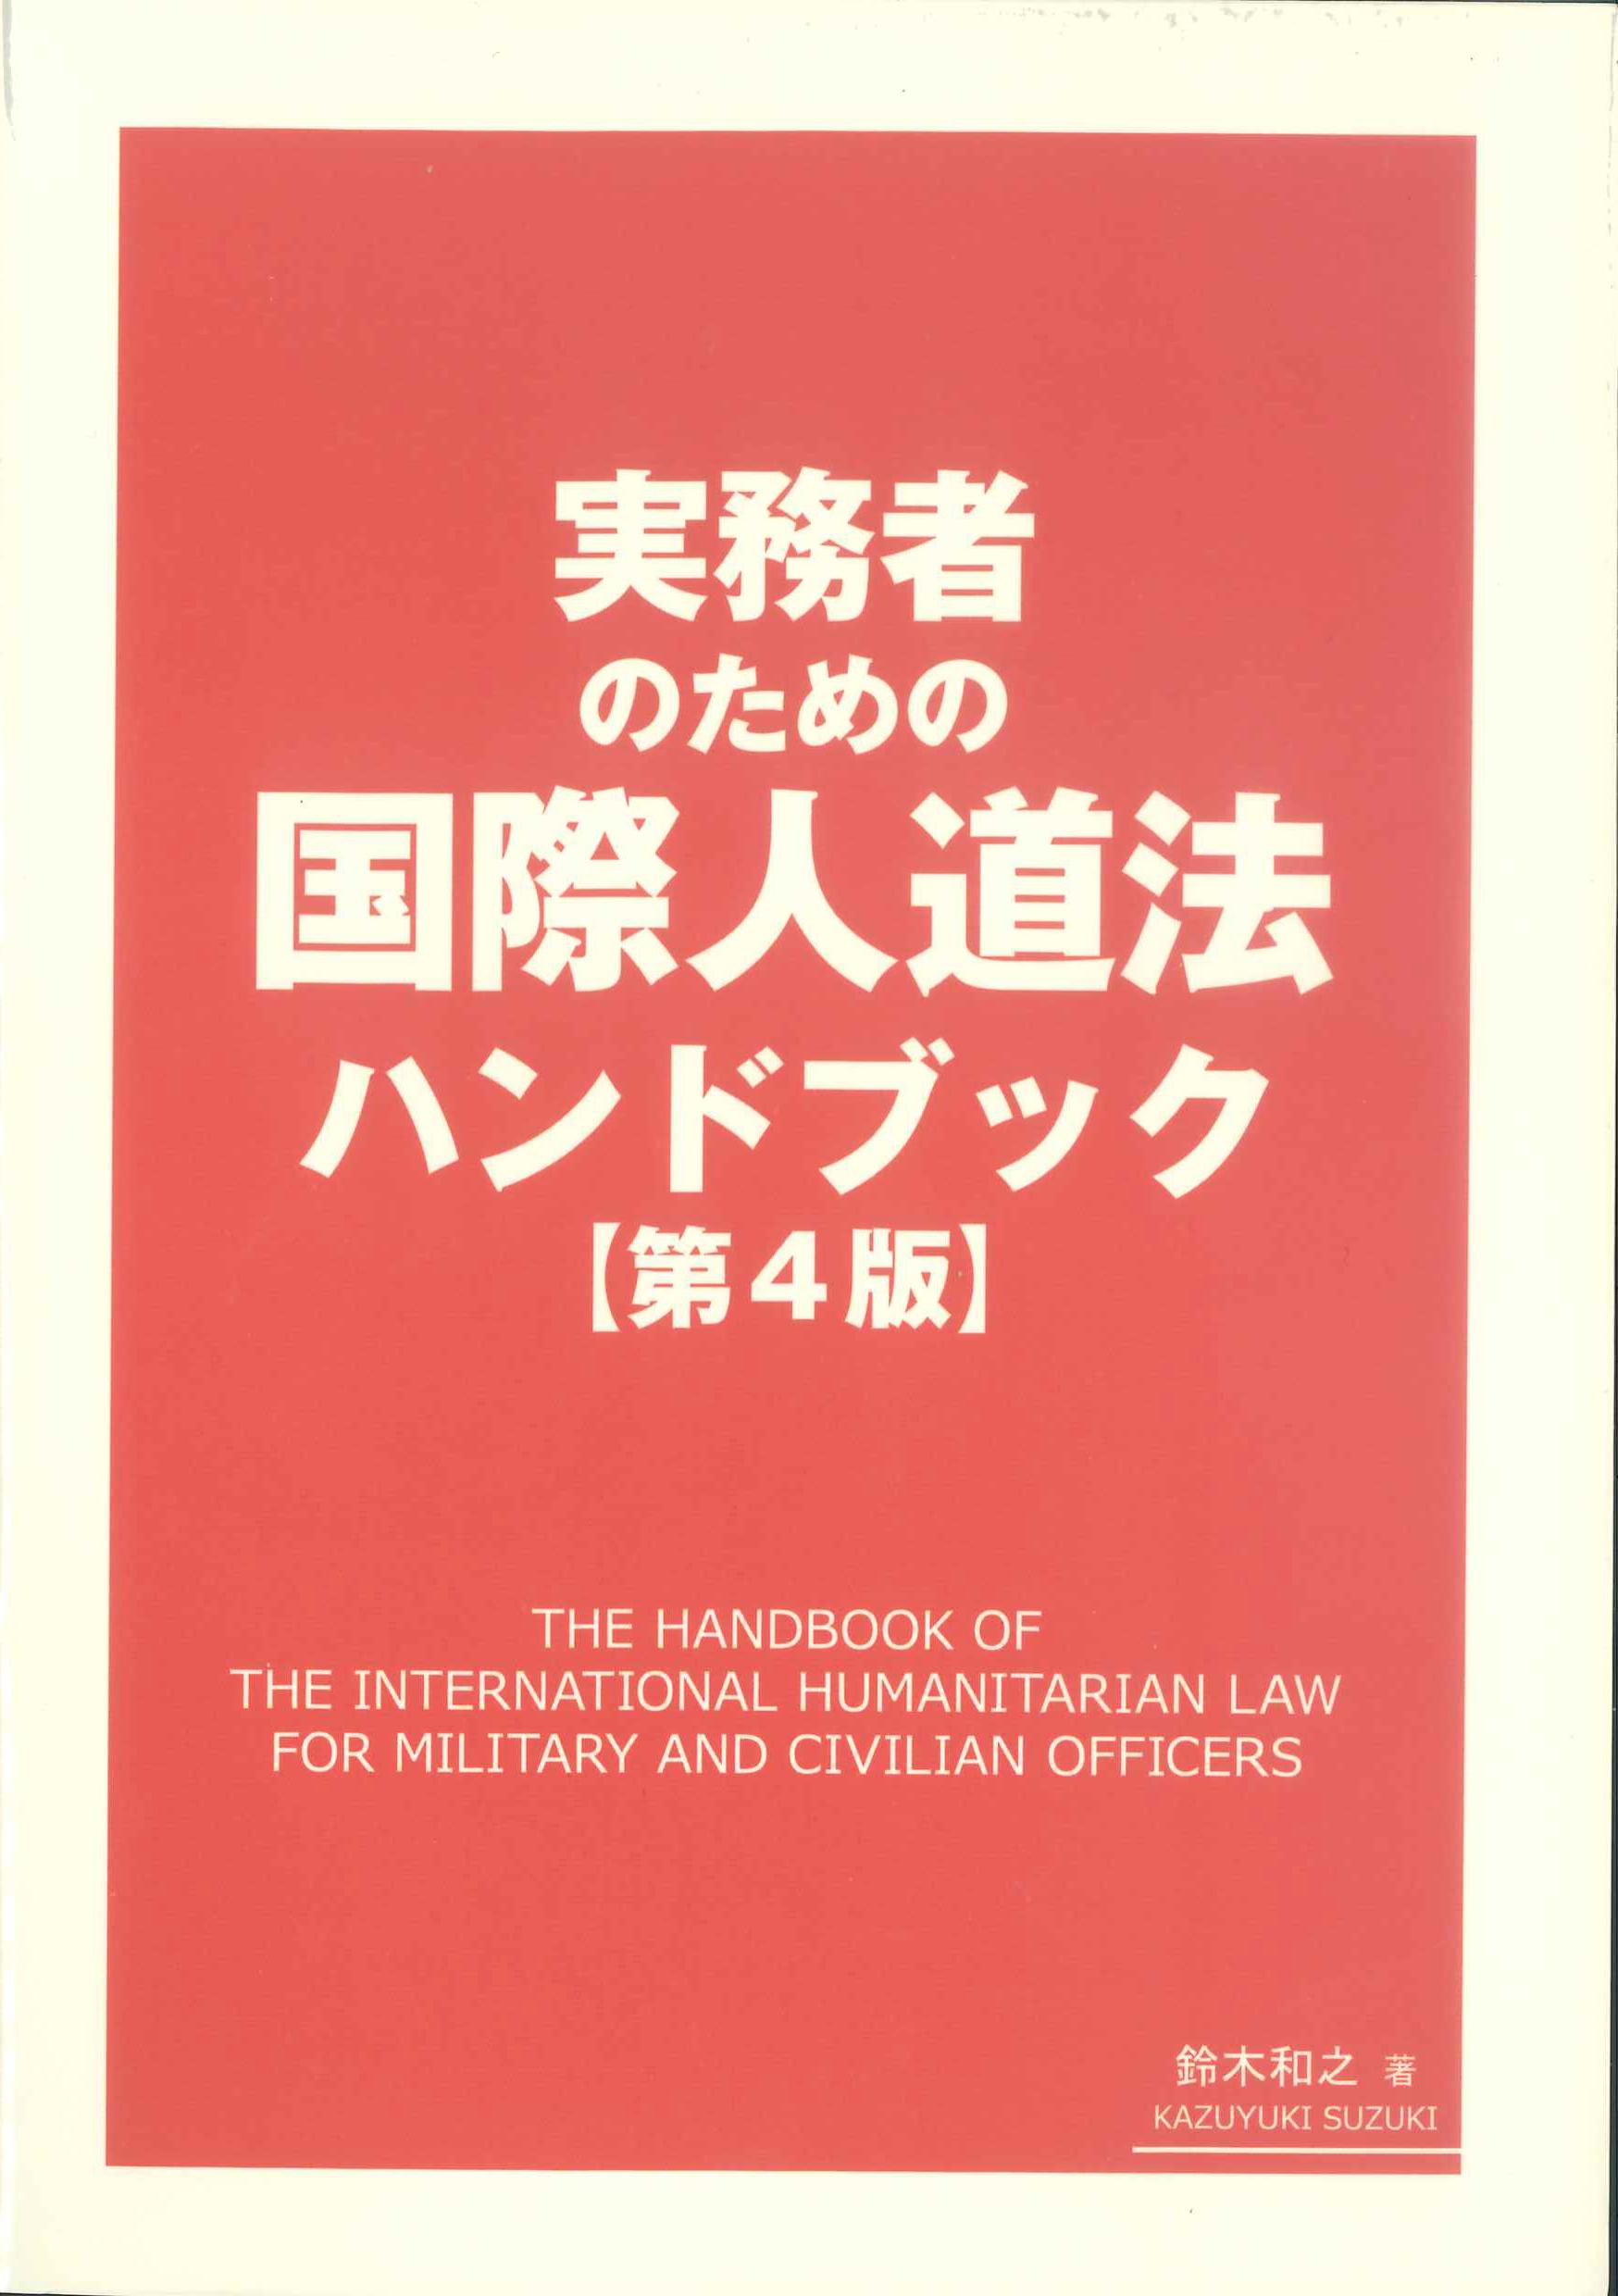 (実務者のための) 国際人道法ハンドブック = The handbook of the international humanitarian law for military and civilian officers / 鈴木和之 著